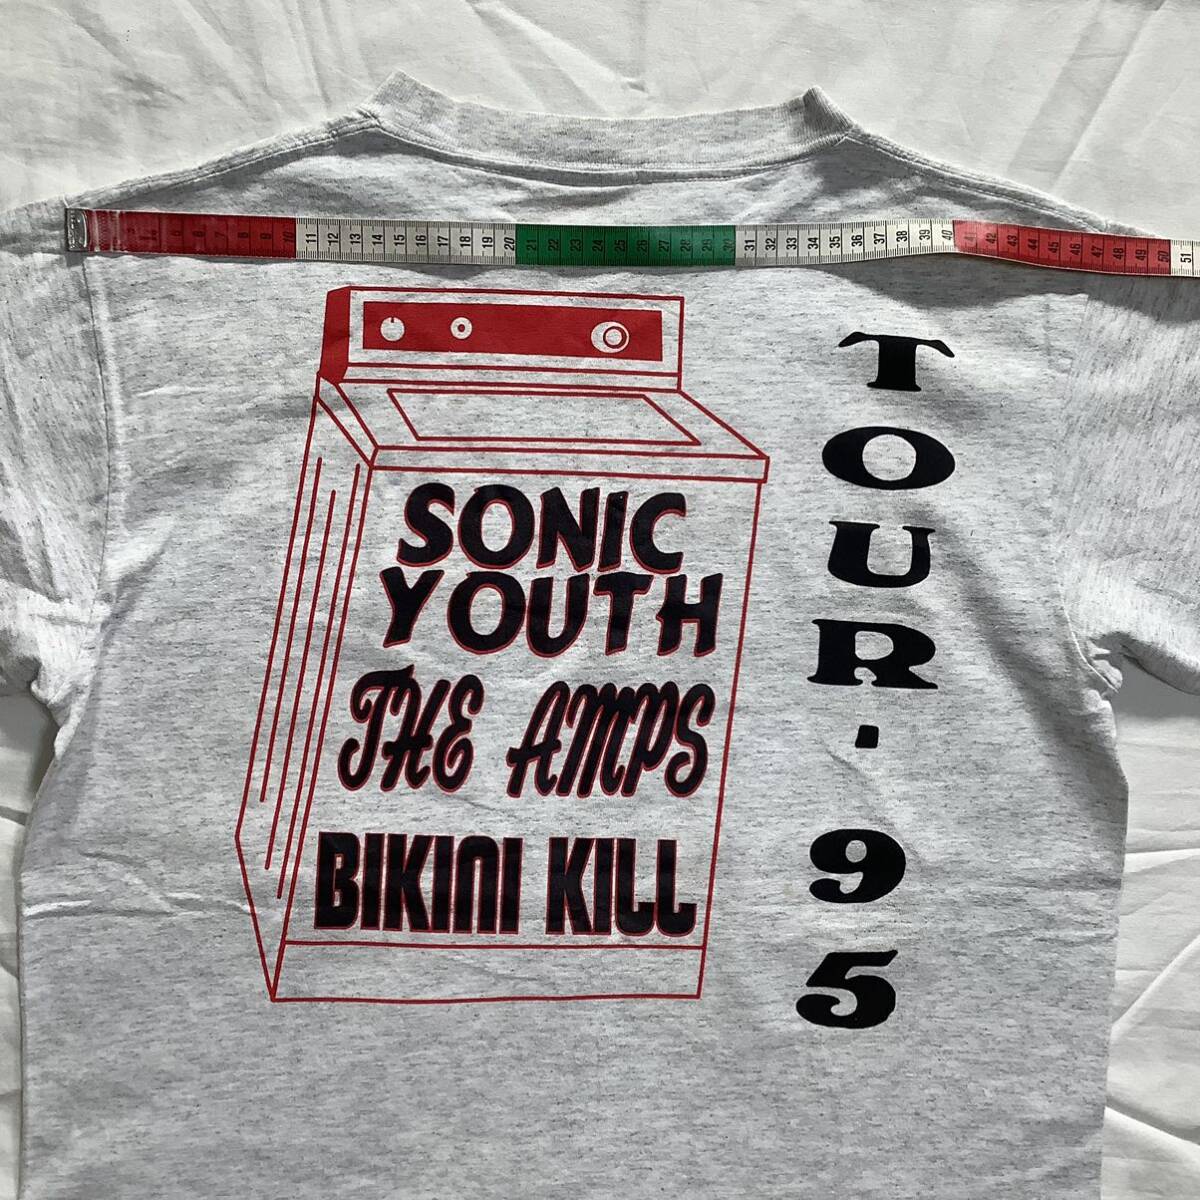 スペシャル! 1995 Sonic Youth Bikini Kill Tour パーキングロット 両面プリント ヴィンテージ Tシャツ 80s 90sの画像8